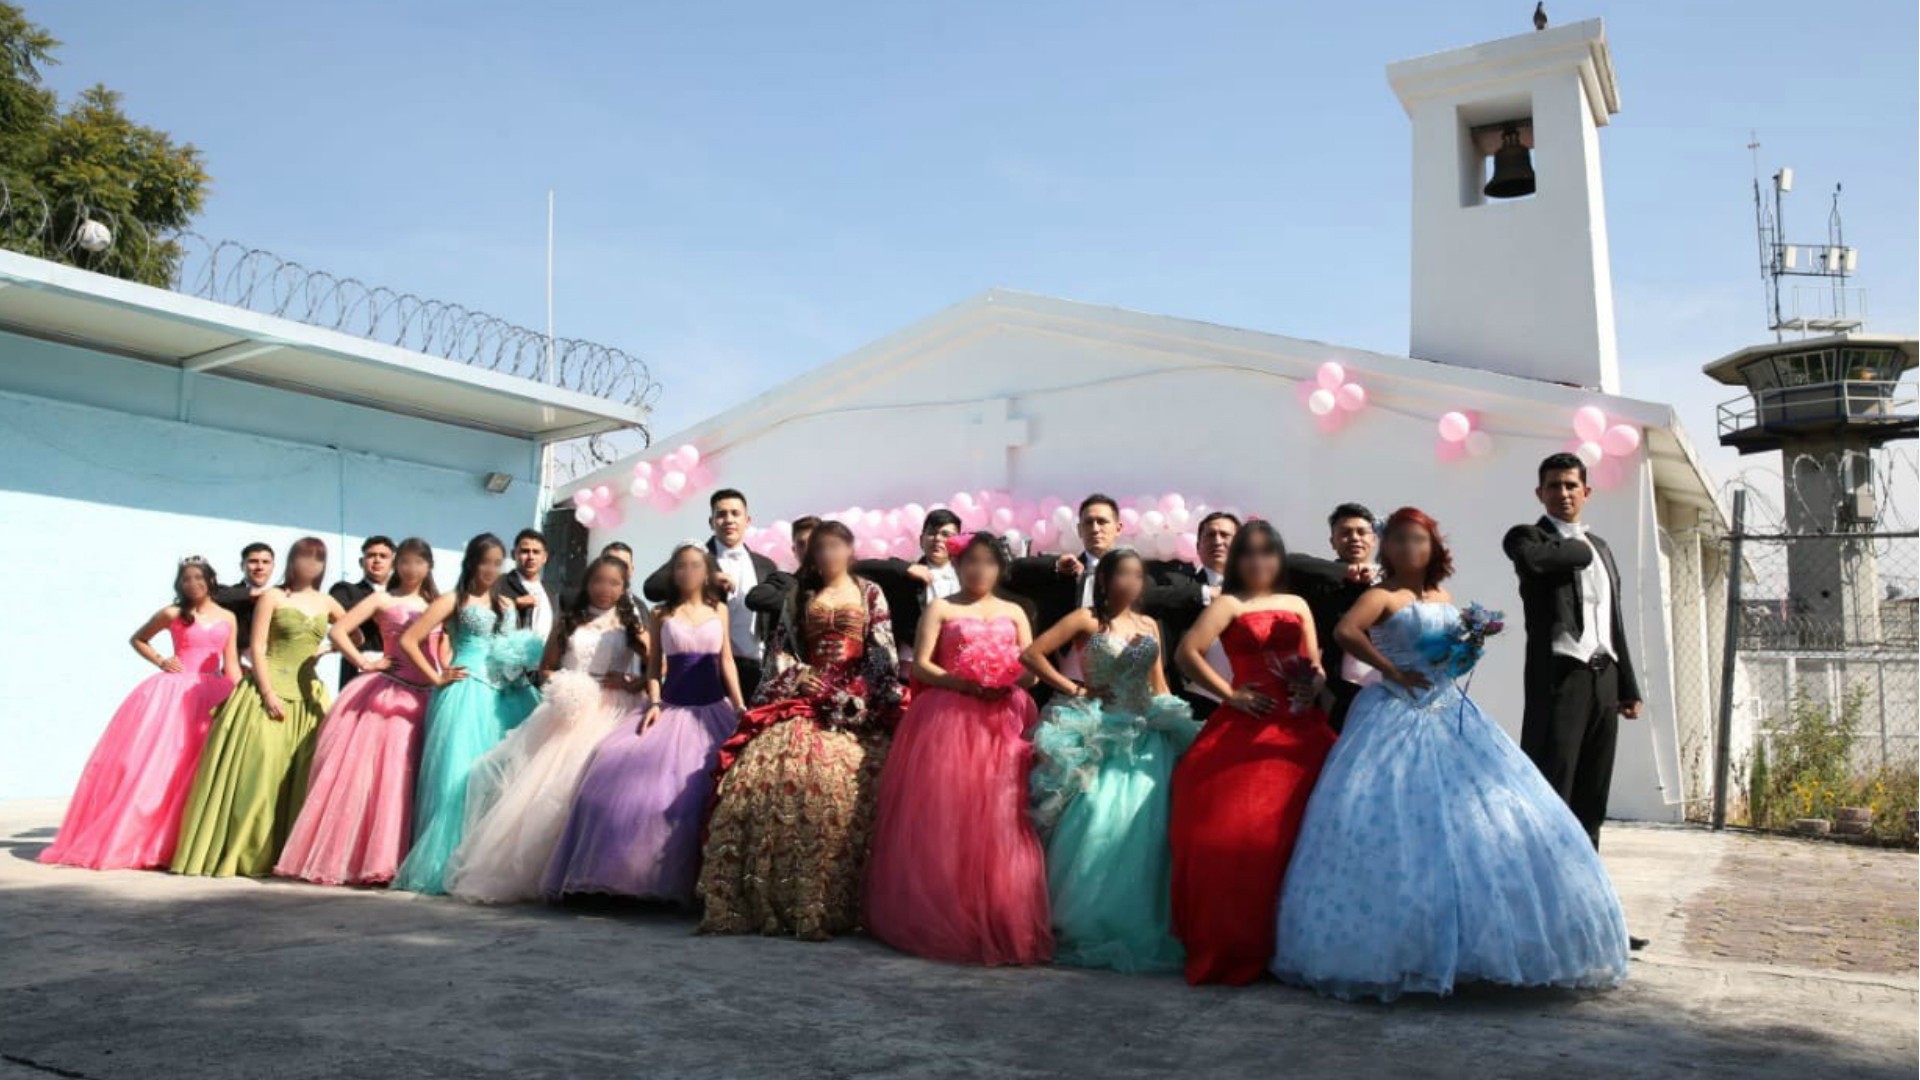 Reclusas de la cárcel de Santa Martha, festejaron los 15 años de sus hijas tras las rejas